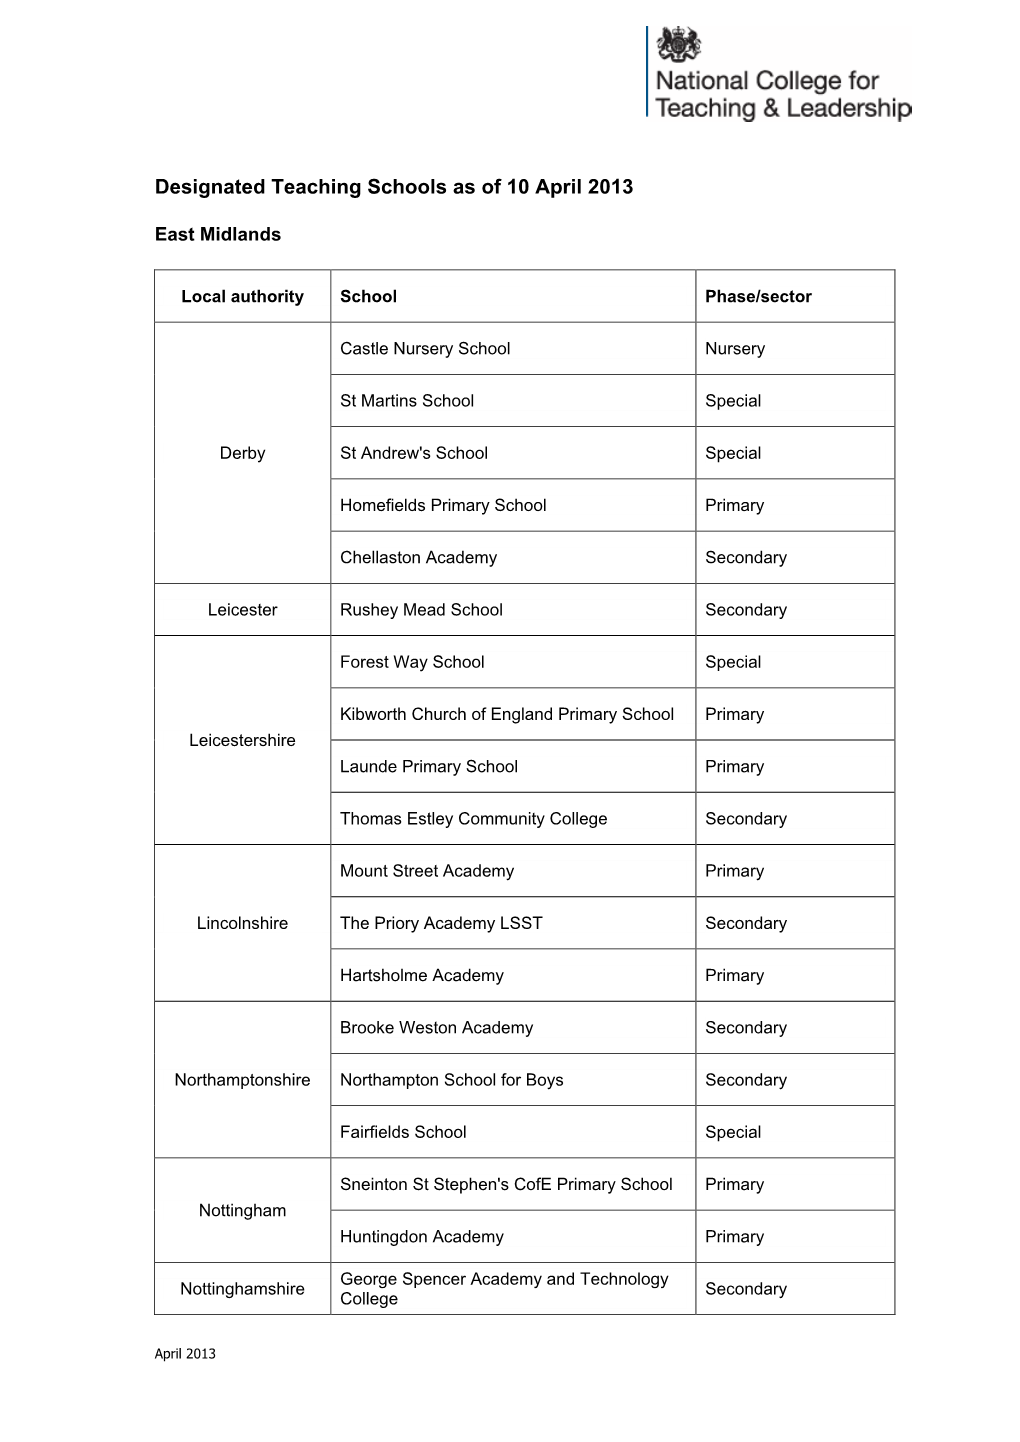 Designated Teaching Schools As of 10 April 2013